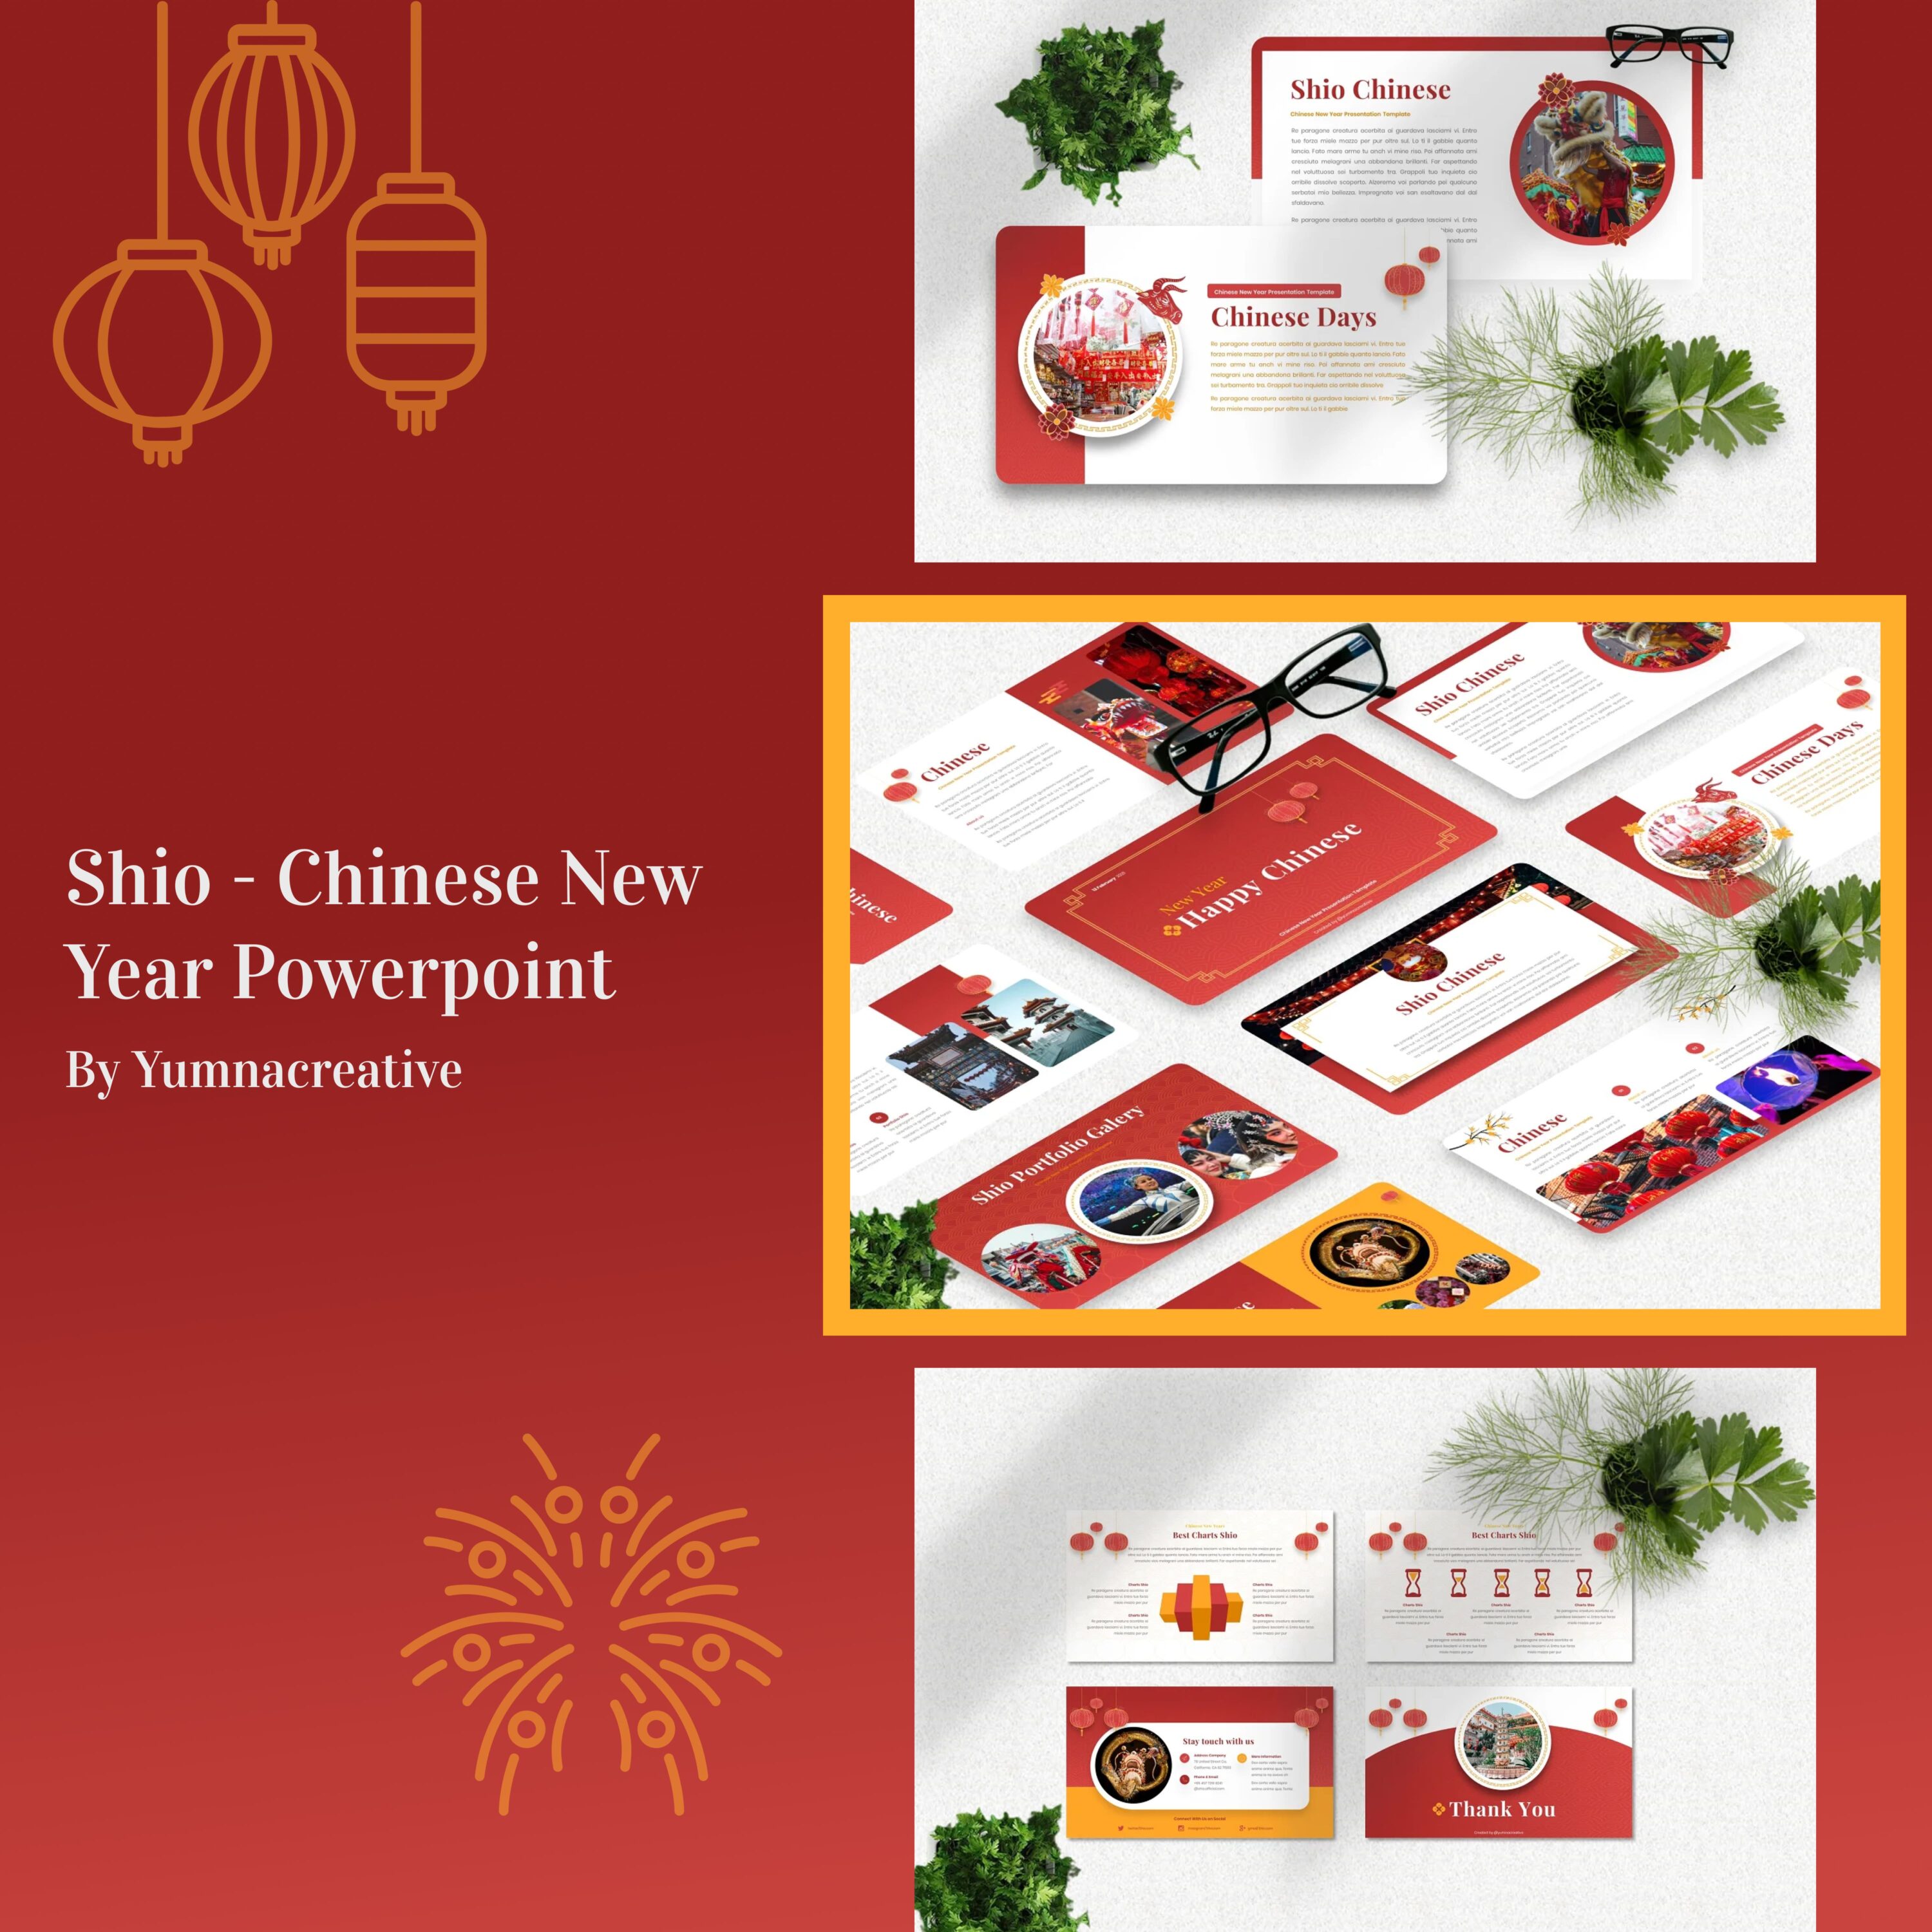 Shio - Chinese New Year Powerpoint.